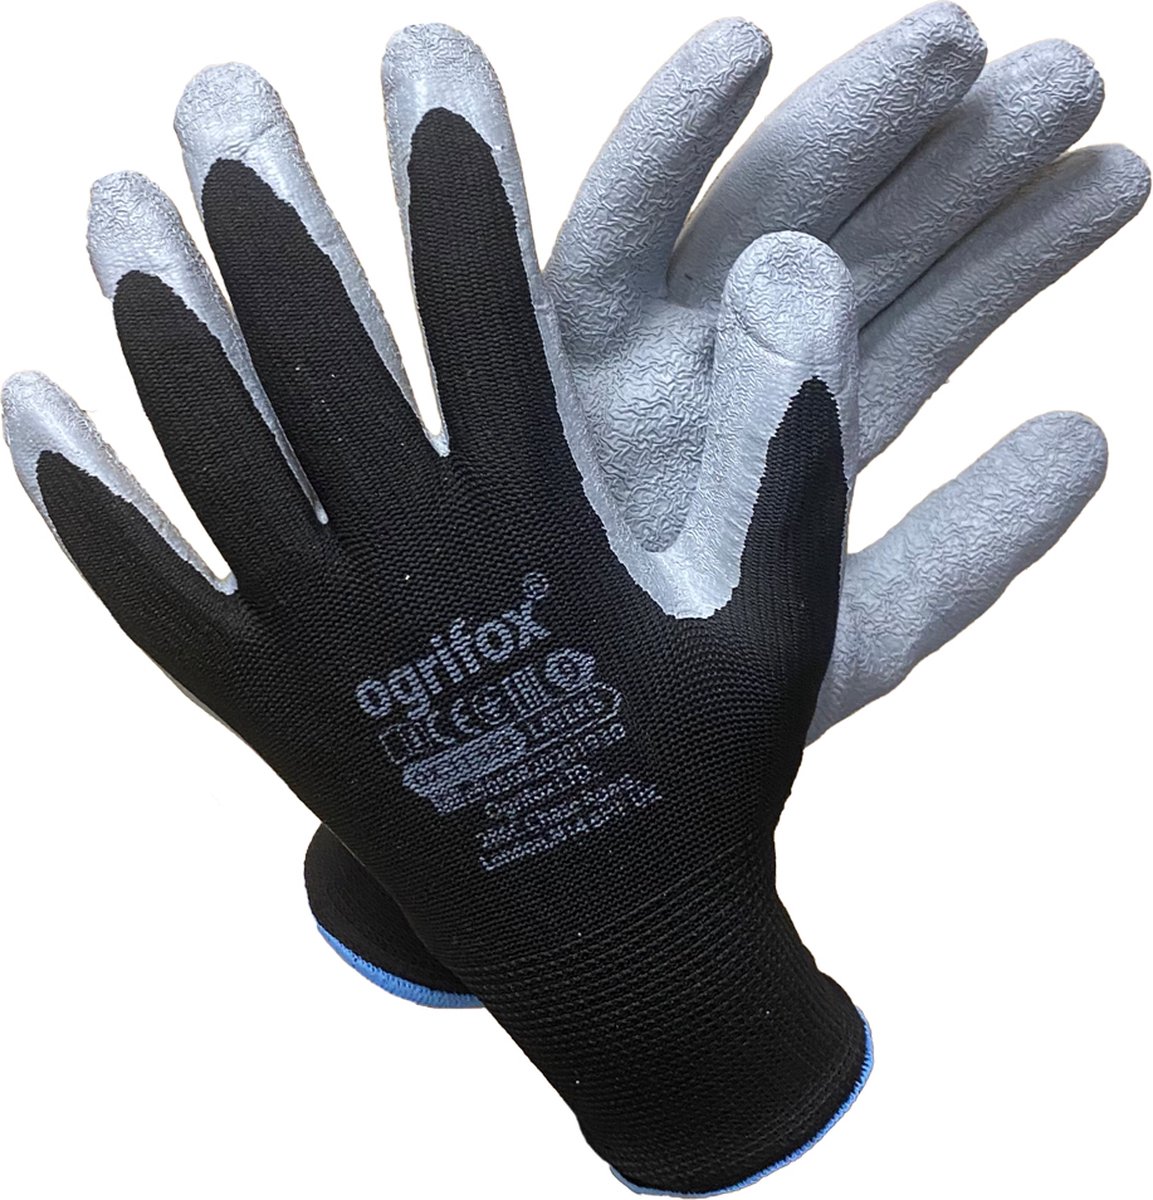 48 paar OGRIFOX Latex Gecoate - Werkhandschoenen - Veiligheidshandschoenen - Beschermende Handschoenen - Doe het zelf - Maat 10